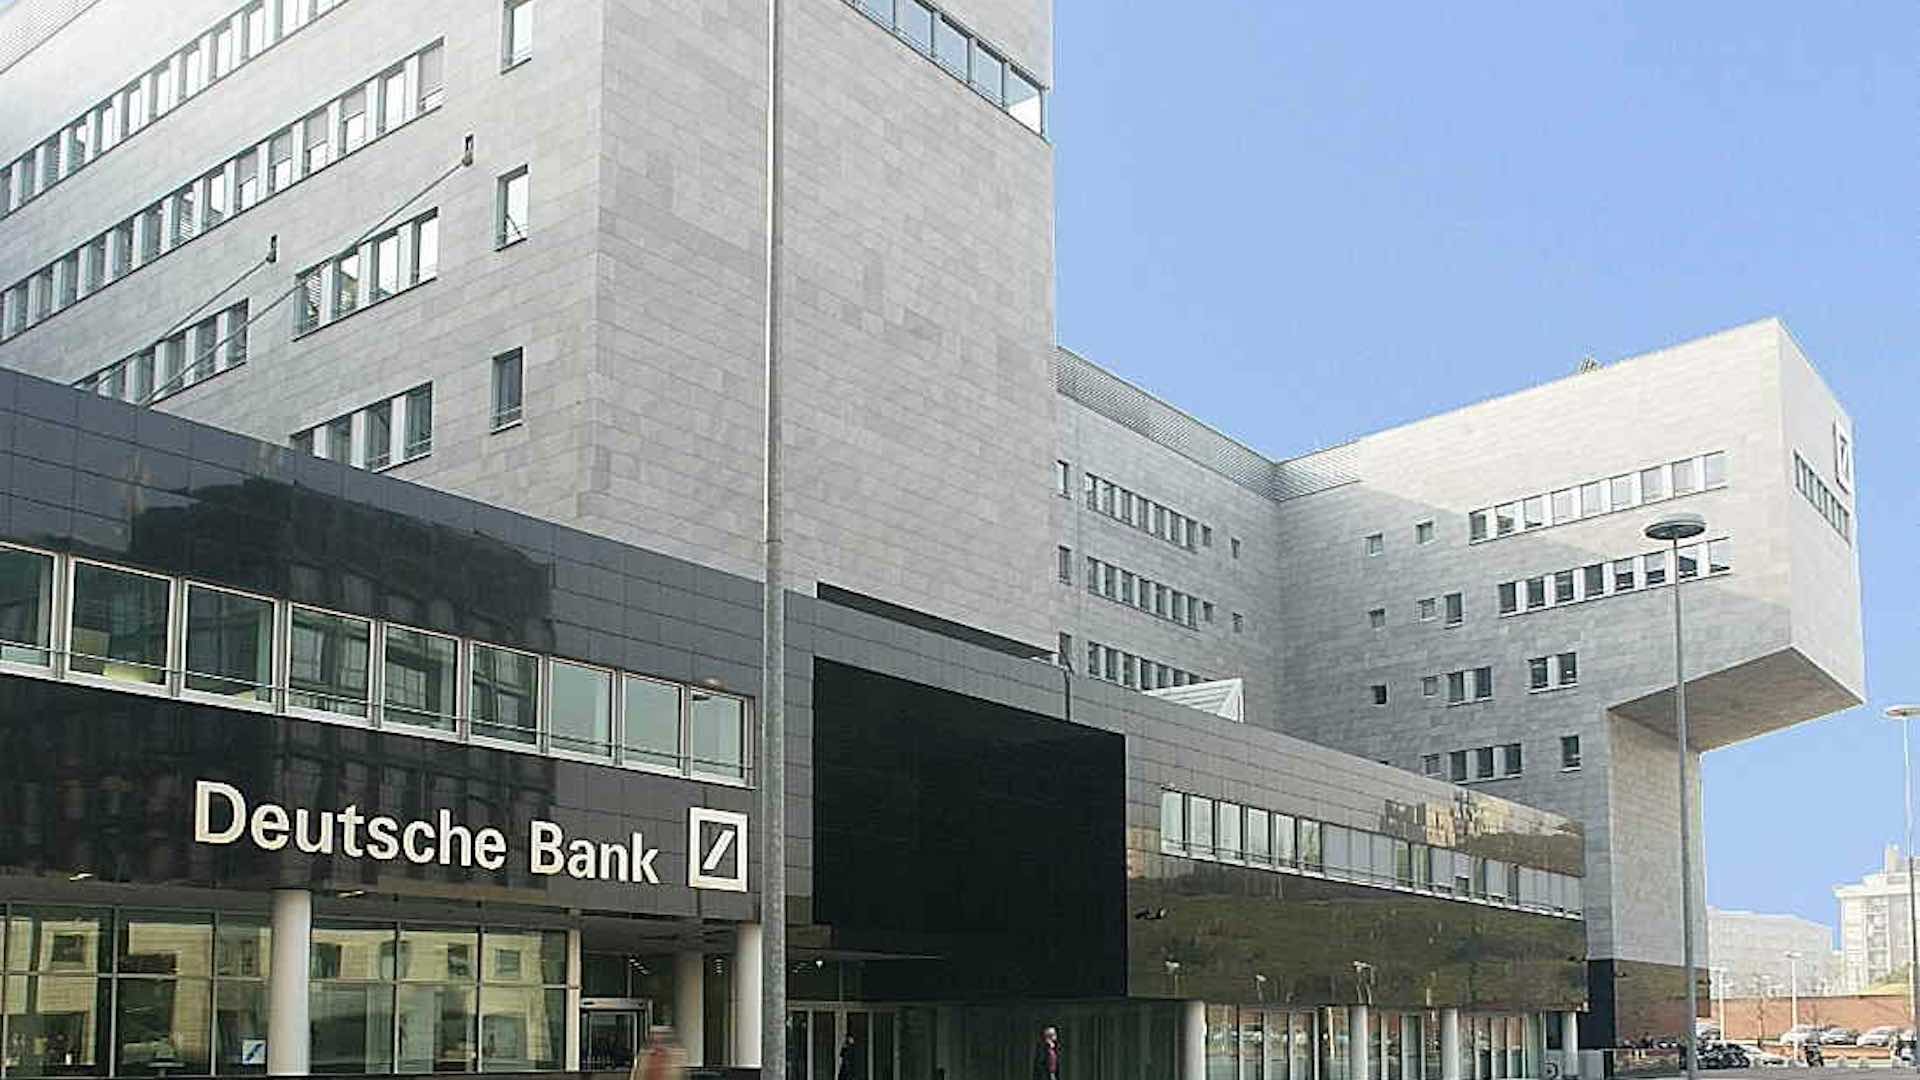 ड्यूश बँक $4.5 अब्ज नफ्यासह 3,500 नोकऱ्या कमी करणार आहे